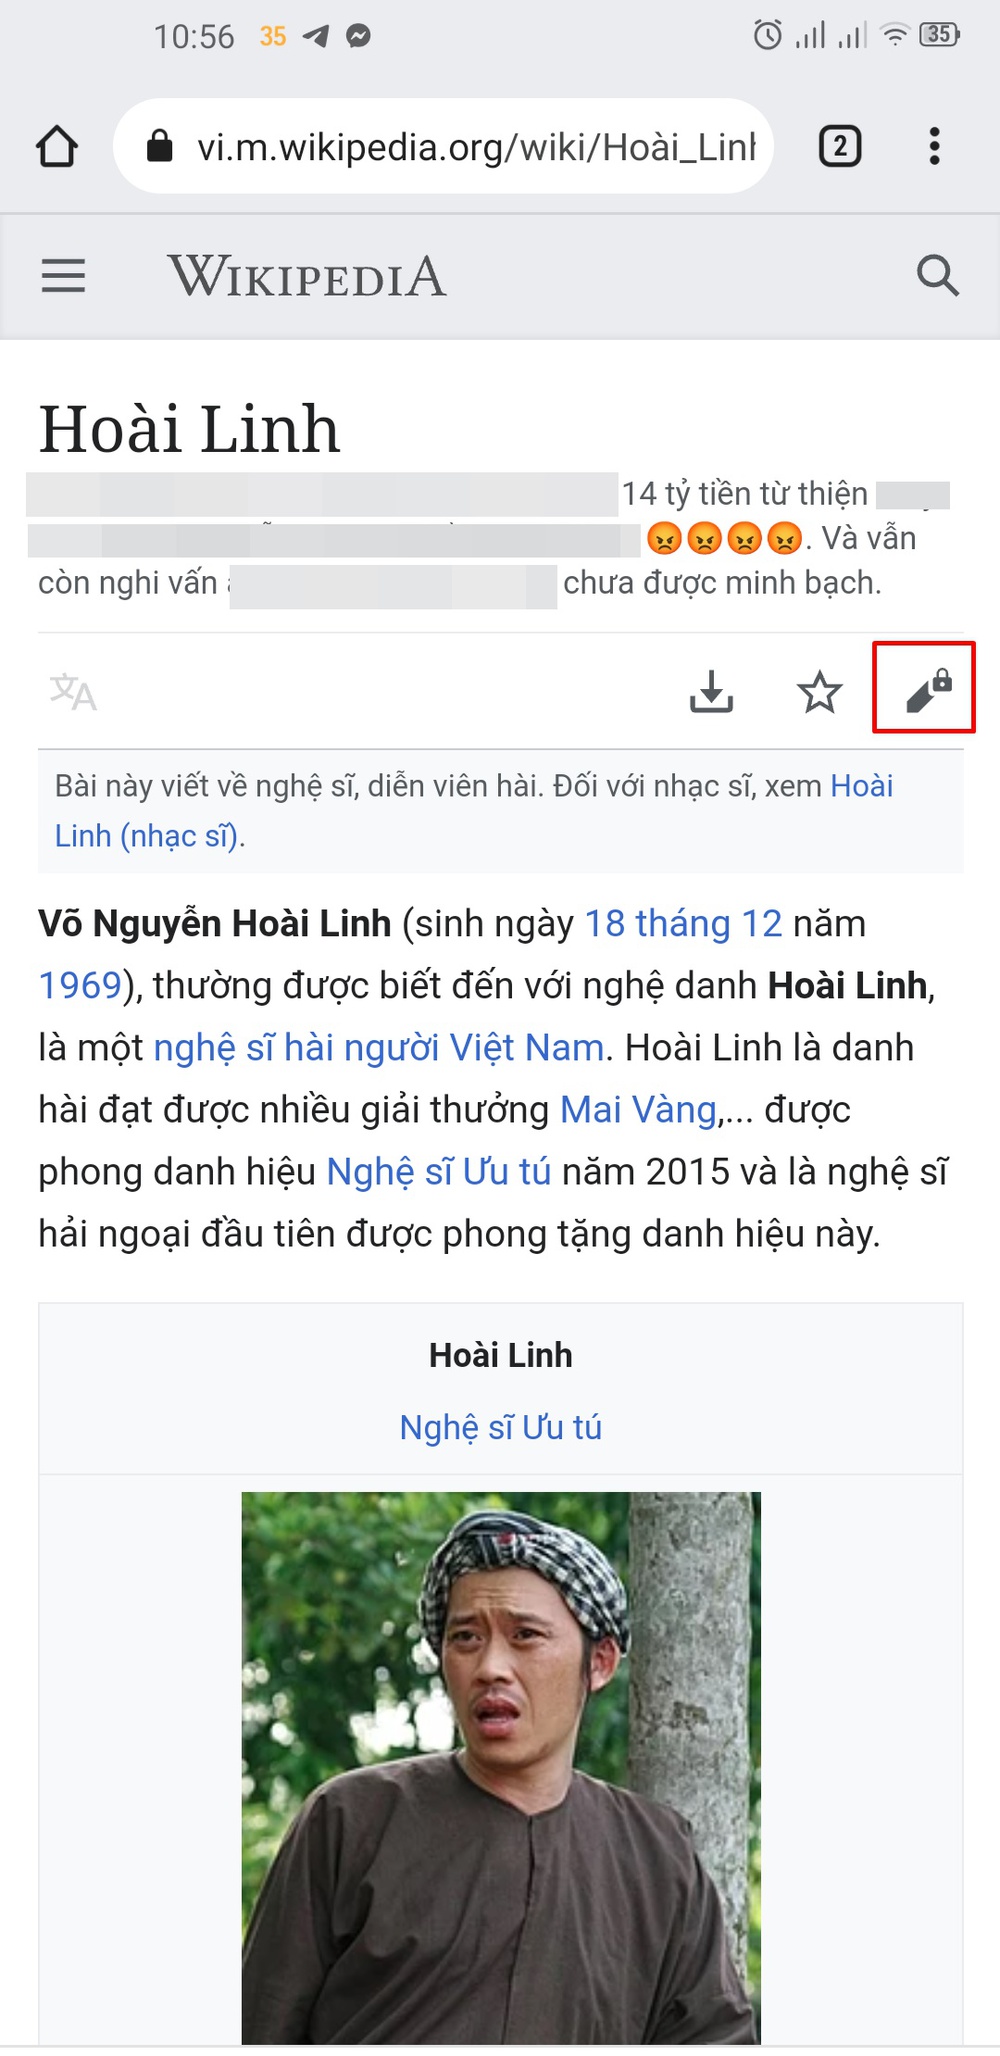 NS Hoài Linh bị sửa tiểu sử trên Wikipedia, những lời thóa mạ liên quan đến 14 tỷ từ thiện - Ảnh 1.